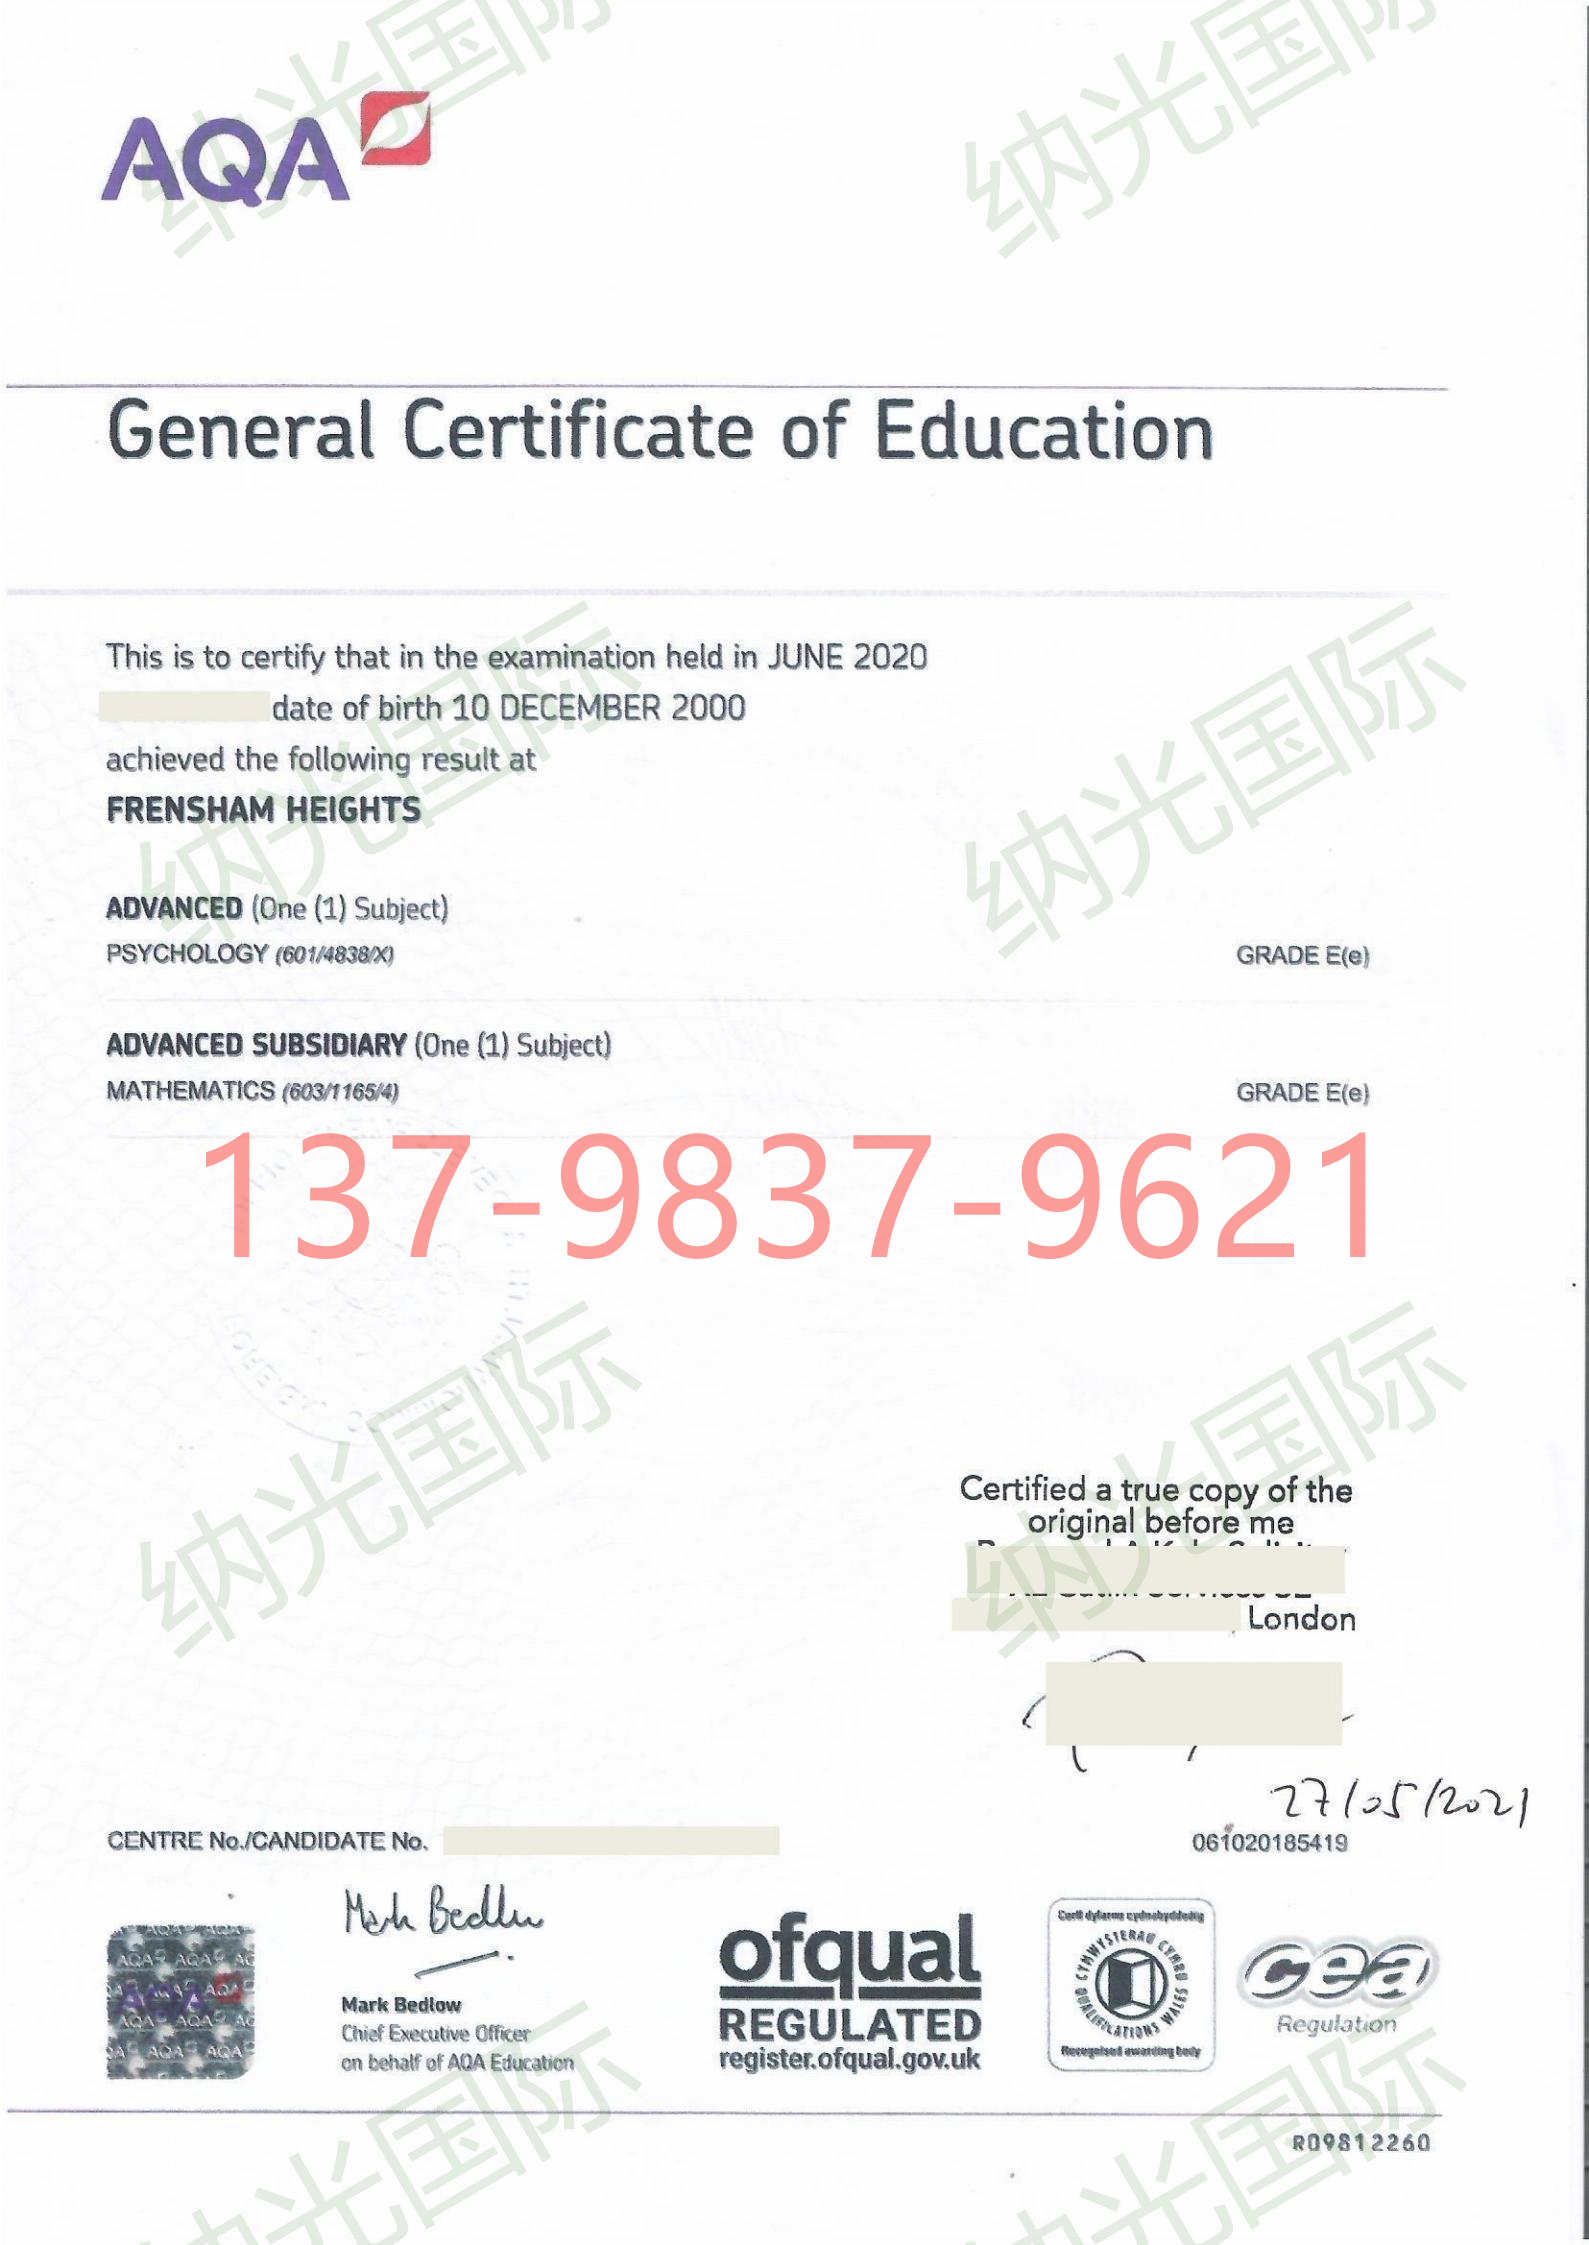 英国高中毕业证书公证认证-中国申请高考使用.jpg